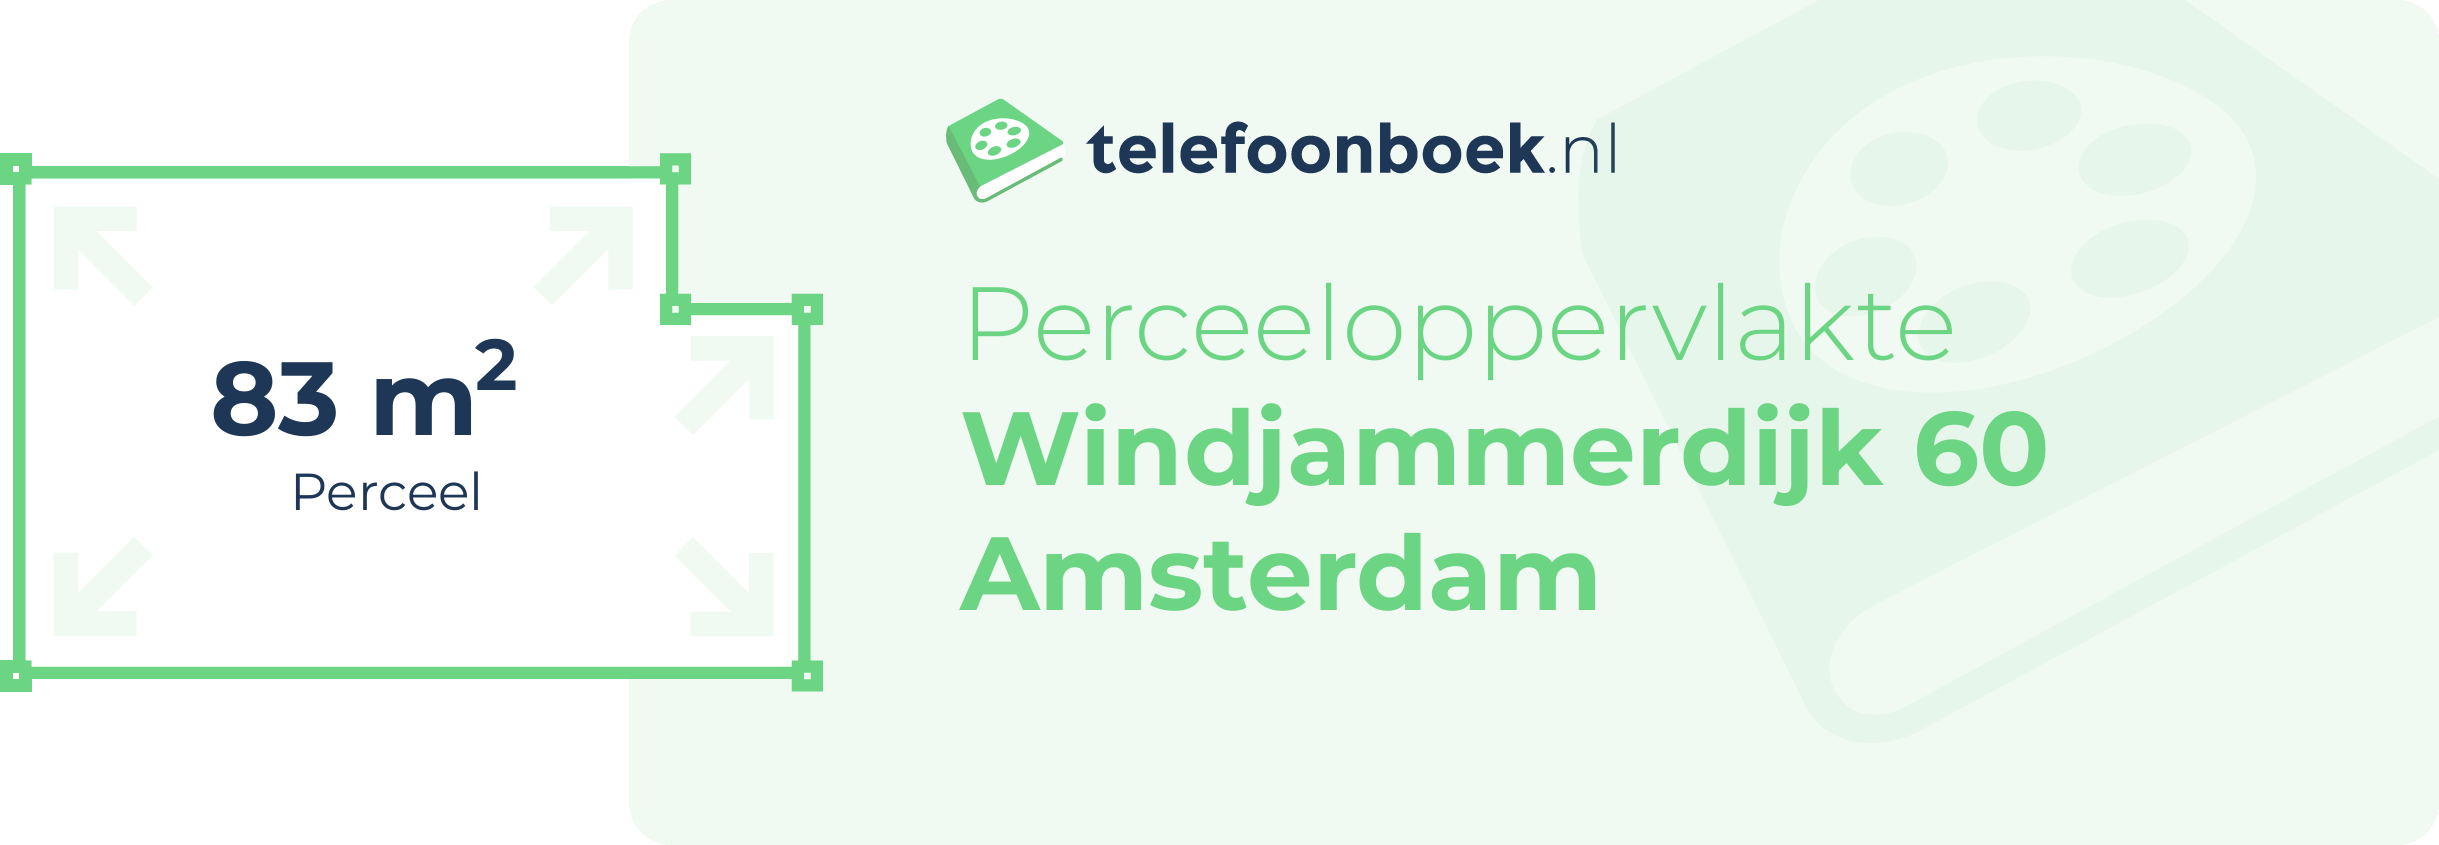 Perceeloppervlakte Windjammerdijk 60 Amsterdam